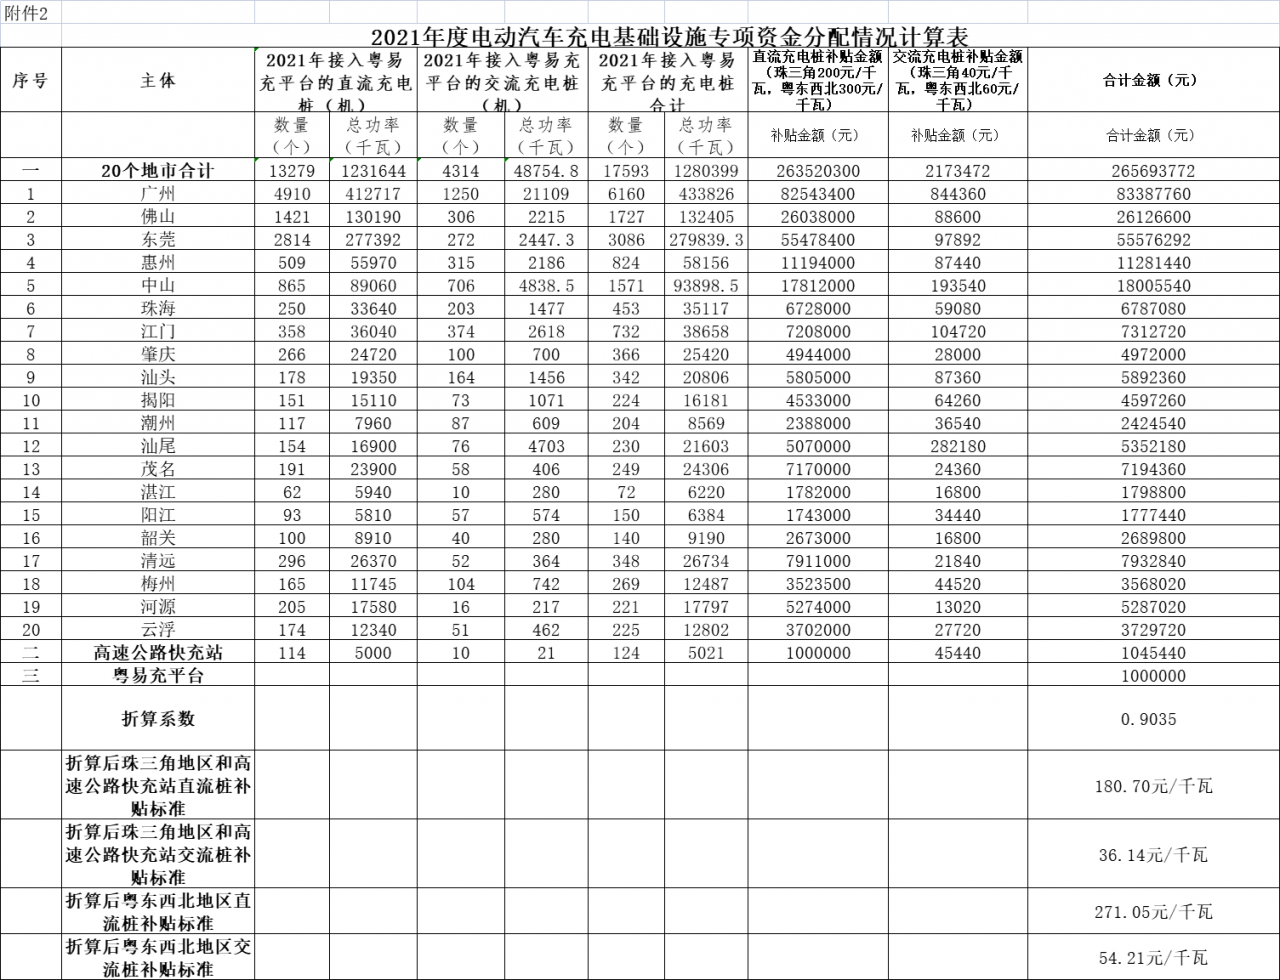 广东2021年度充电基础设施专项资金：2021-2023年对粤易充平台每年补贴100万元